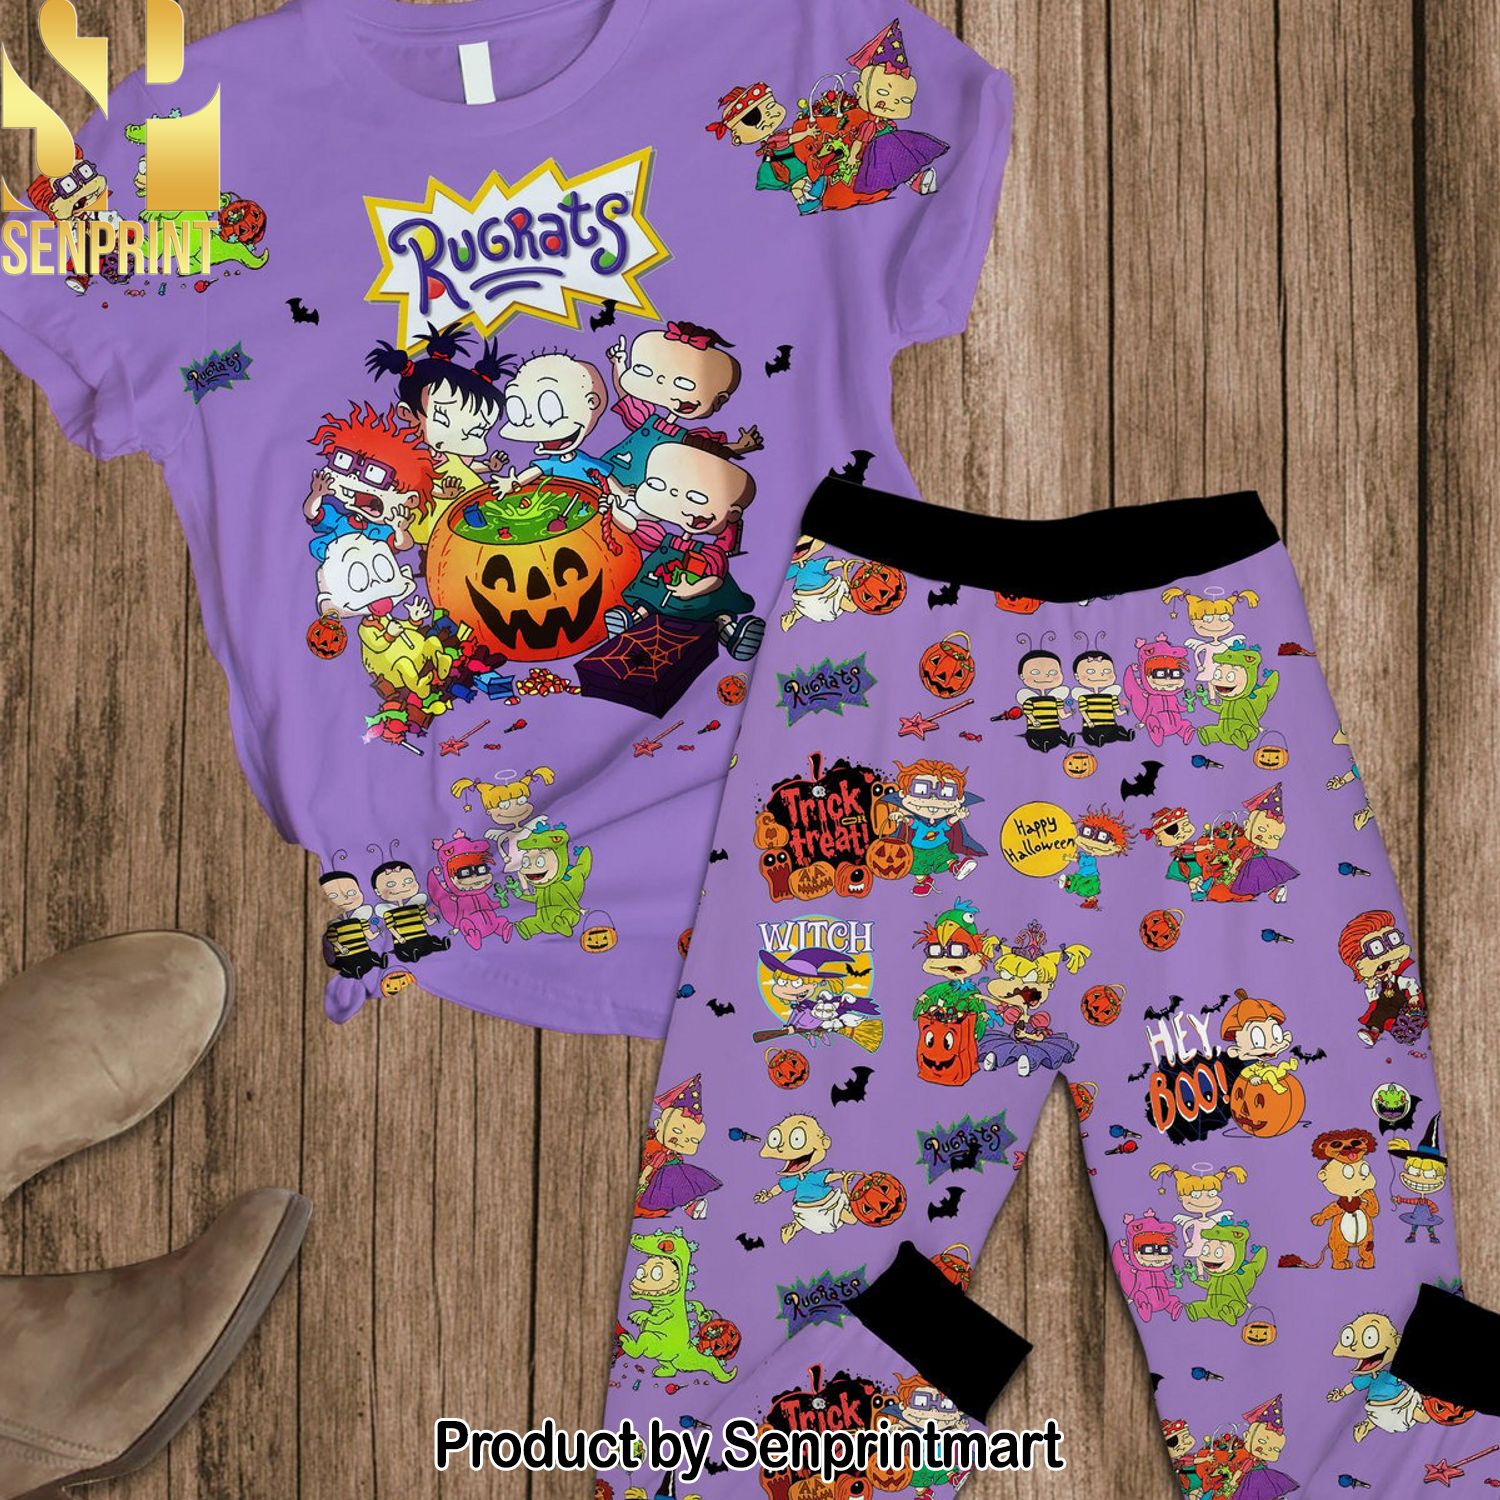 Rugrats New Fashion Full Printed Pajama Sets